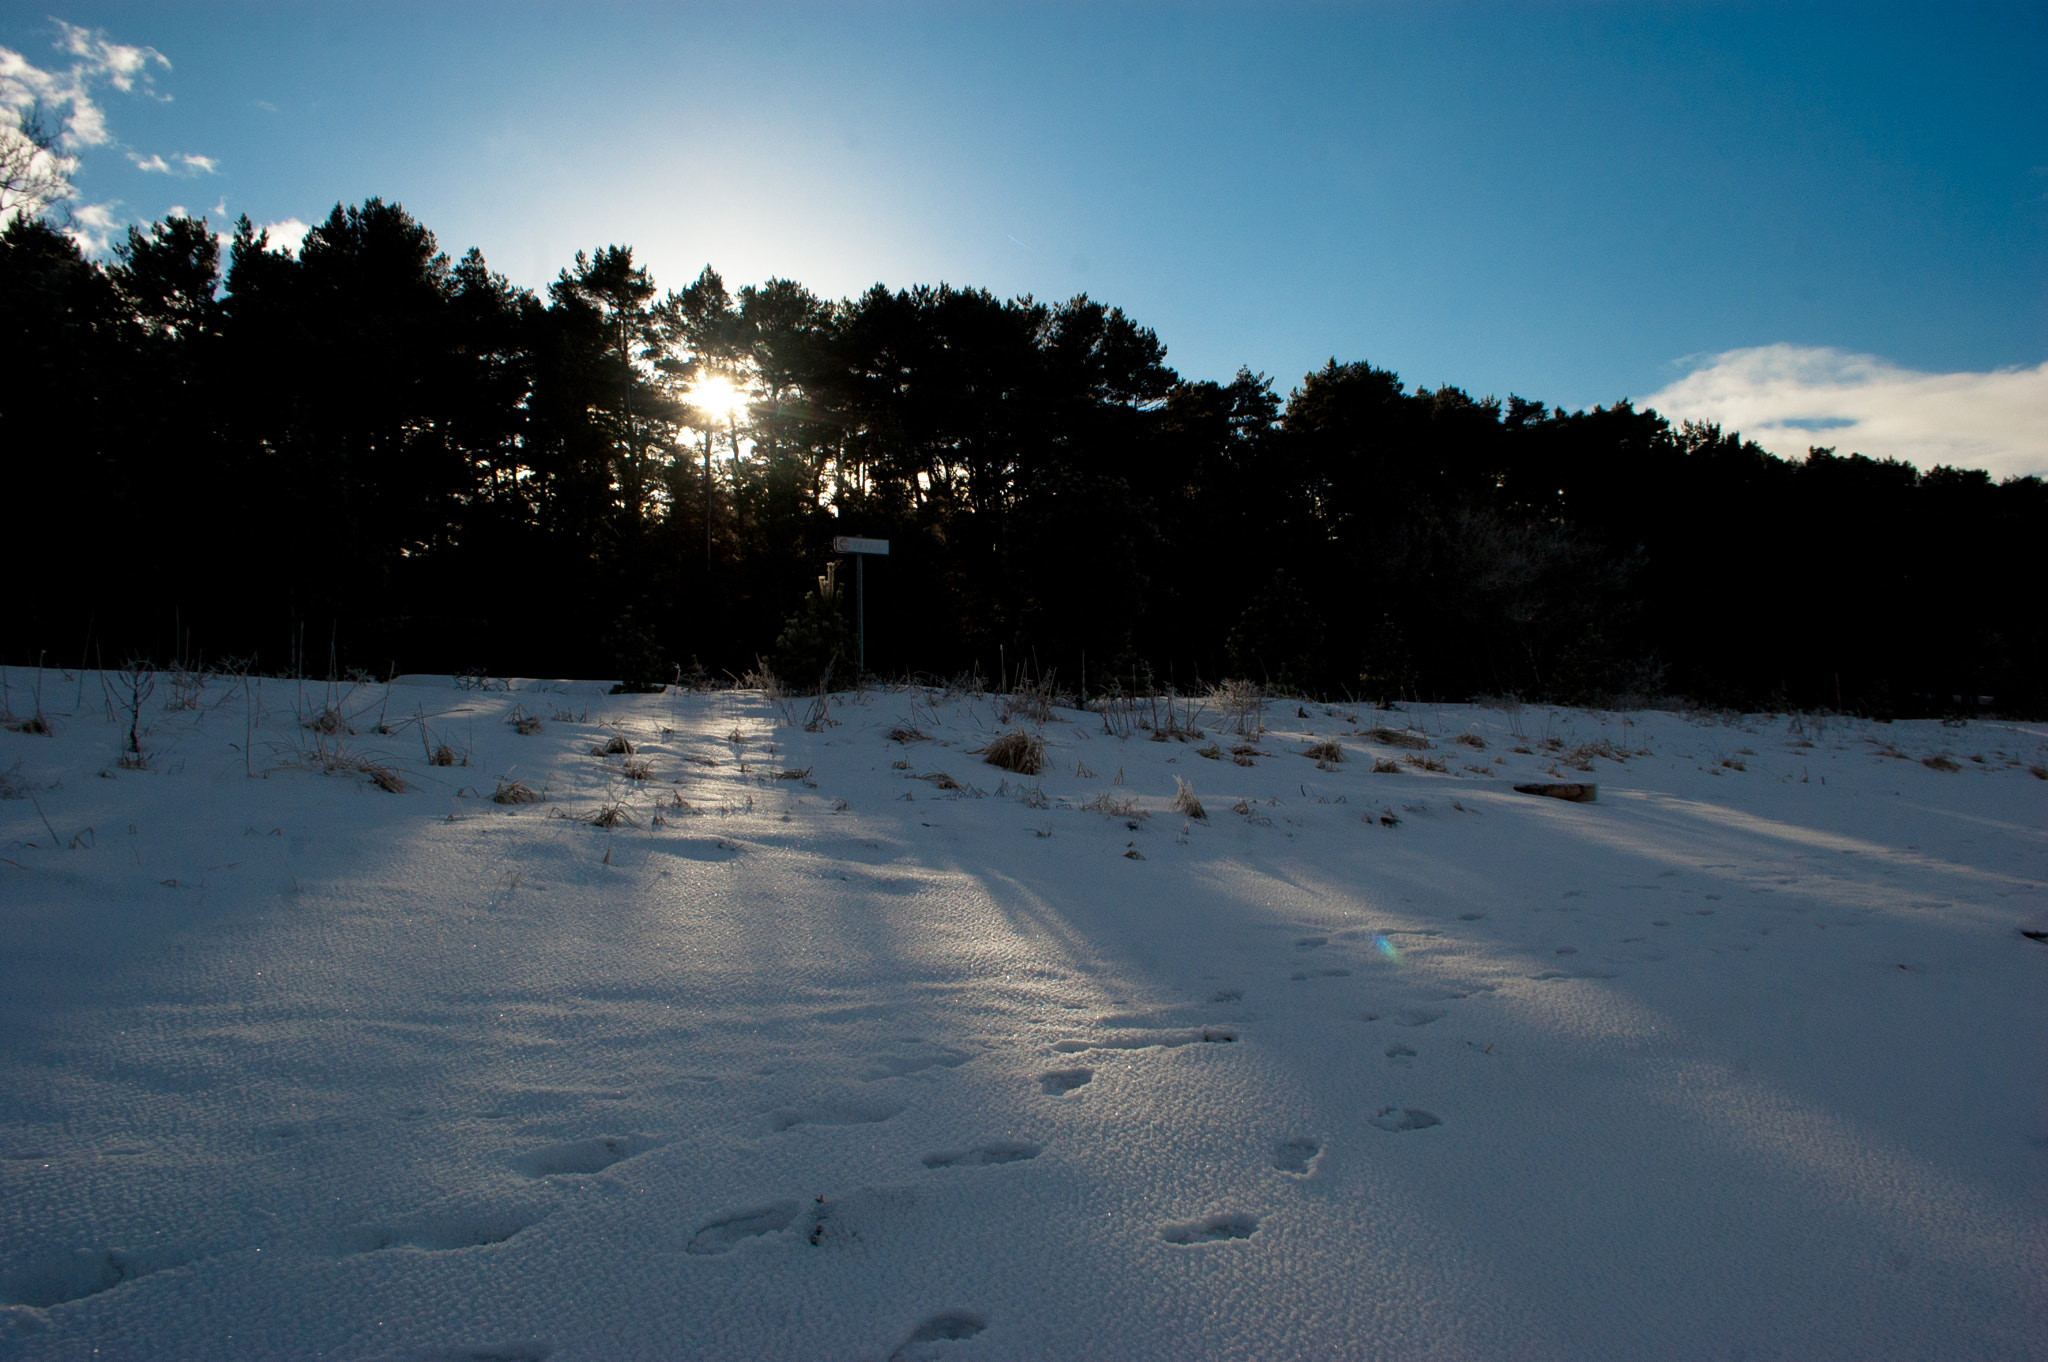 Nikon D40 + Nikon AF-S DX Nikkor 18-55mm F3.5-5.6G VR sample photo. Estonian winter under the snow photography